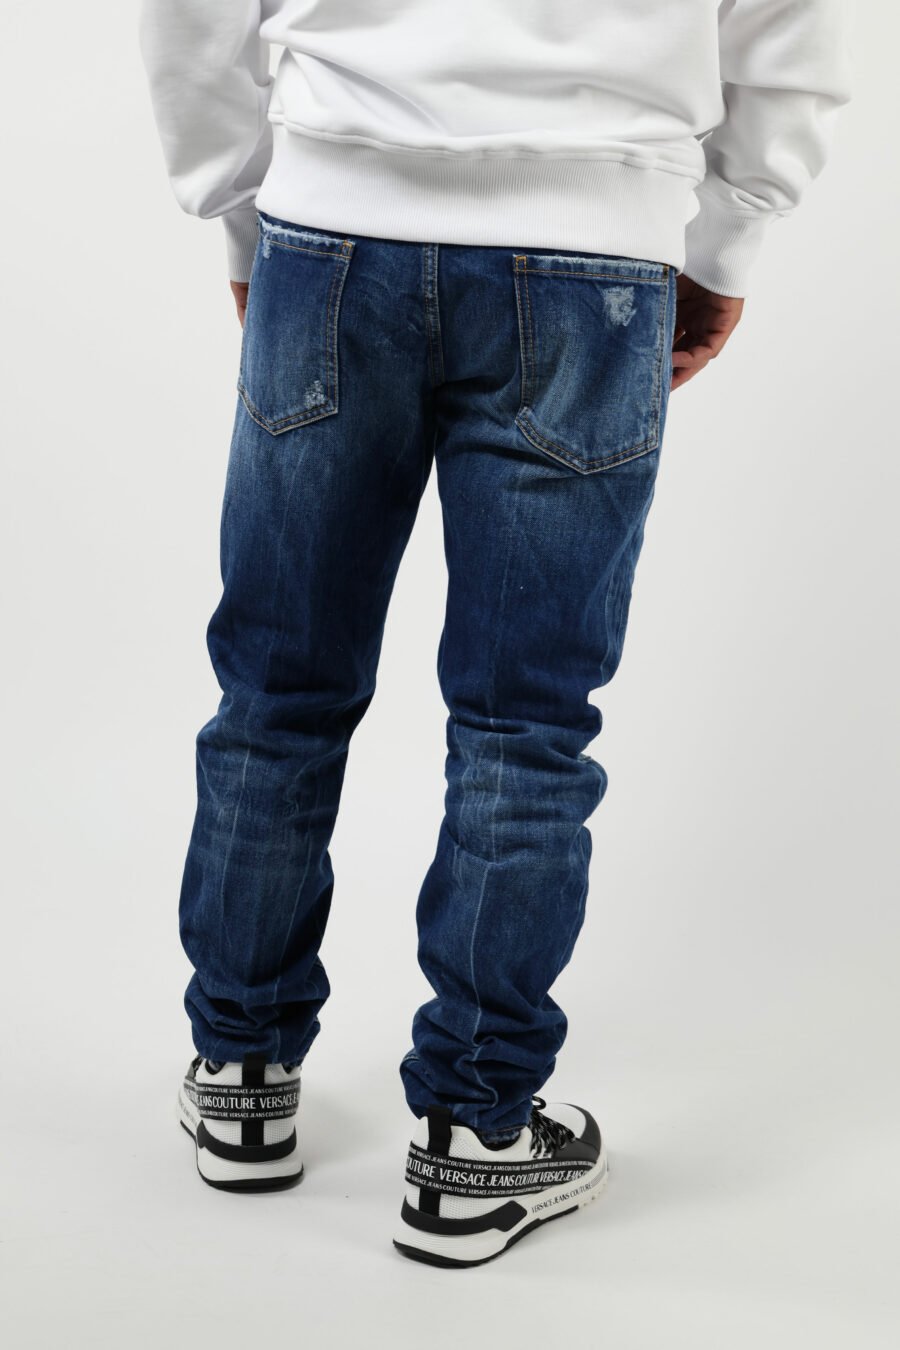 Pantalón vaquero azul "cool guy" con semirotos y desgastado - 8054148459994 3